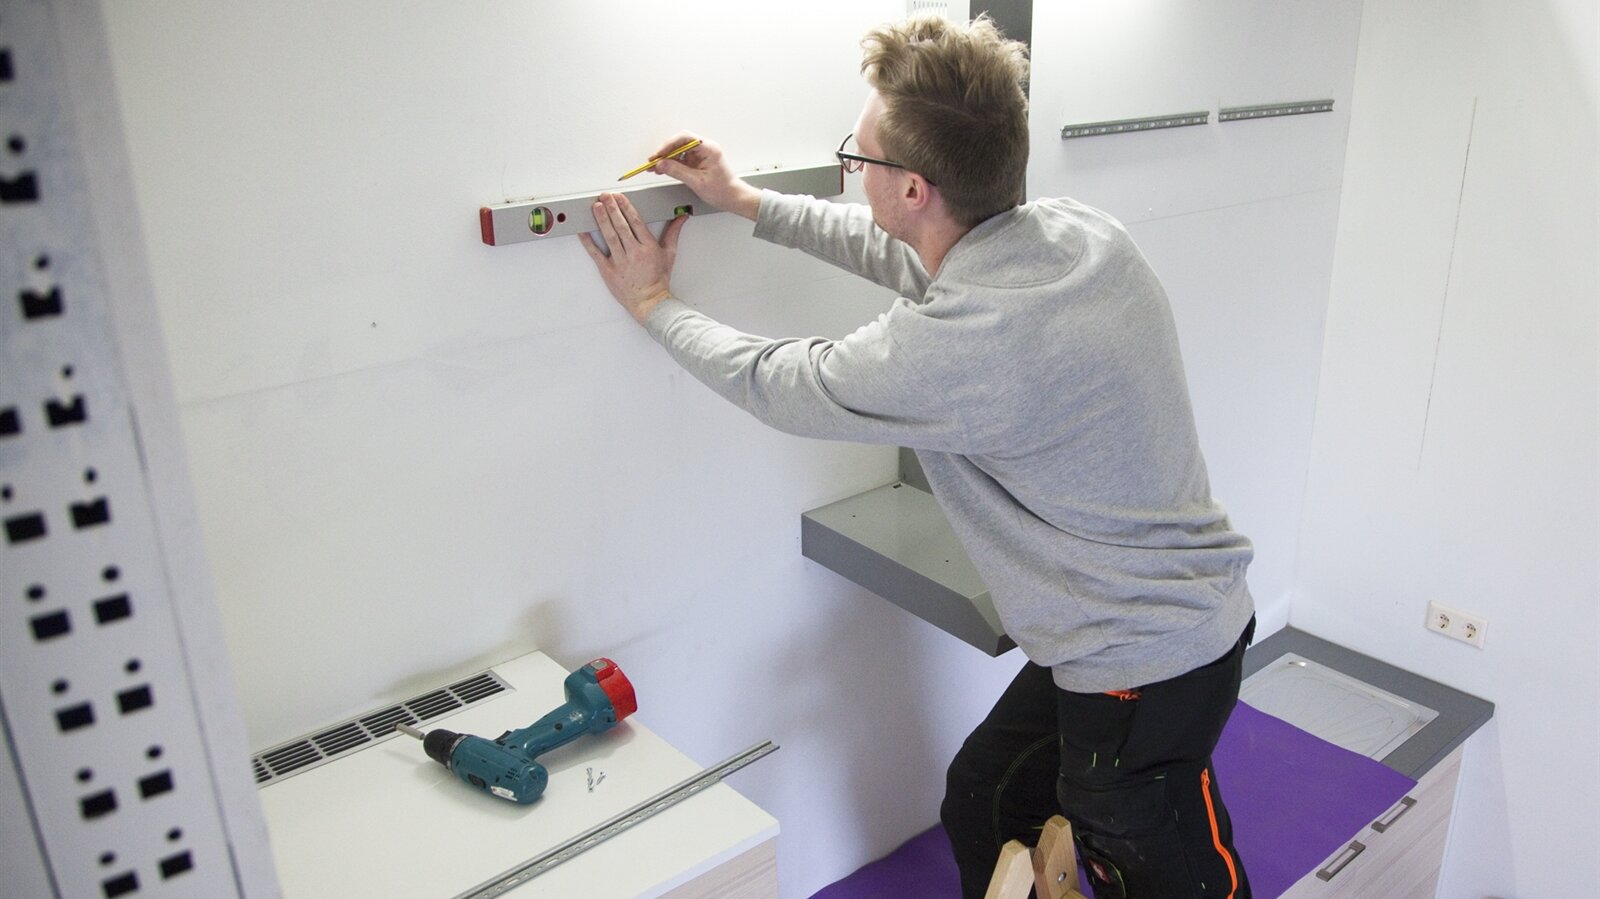 Matthias zeichnet einen Strich an der Wand mit Hilfe der Wasserwaage.